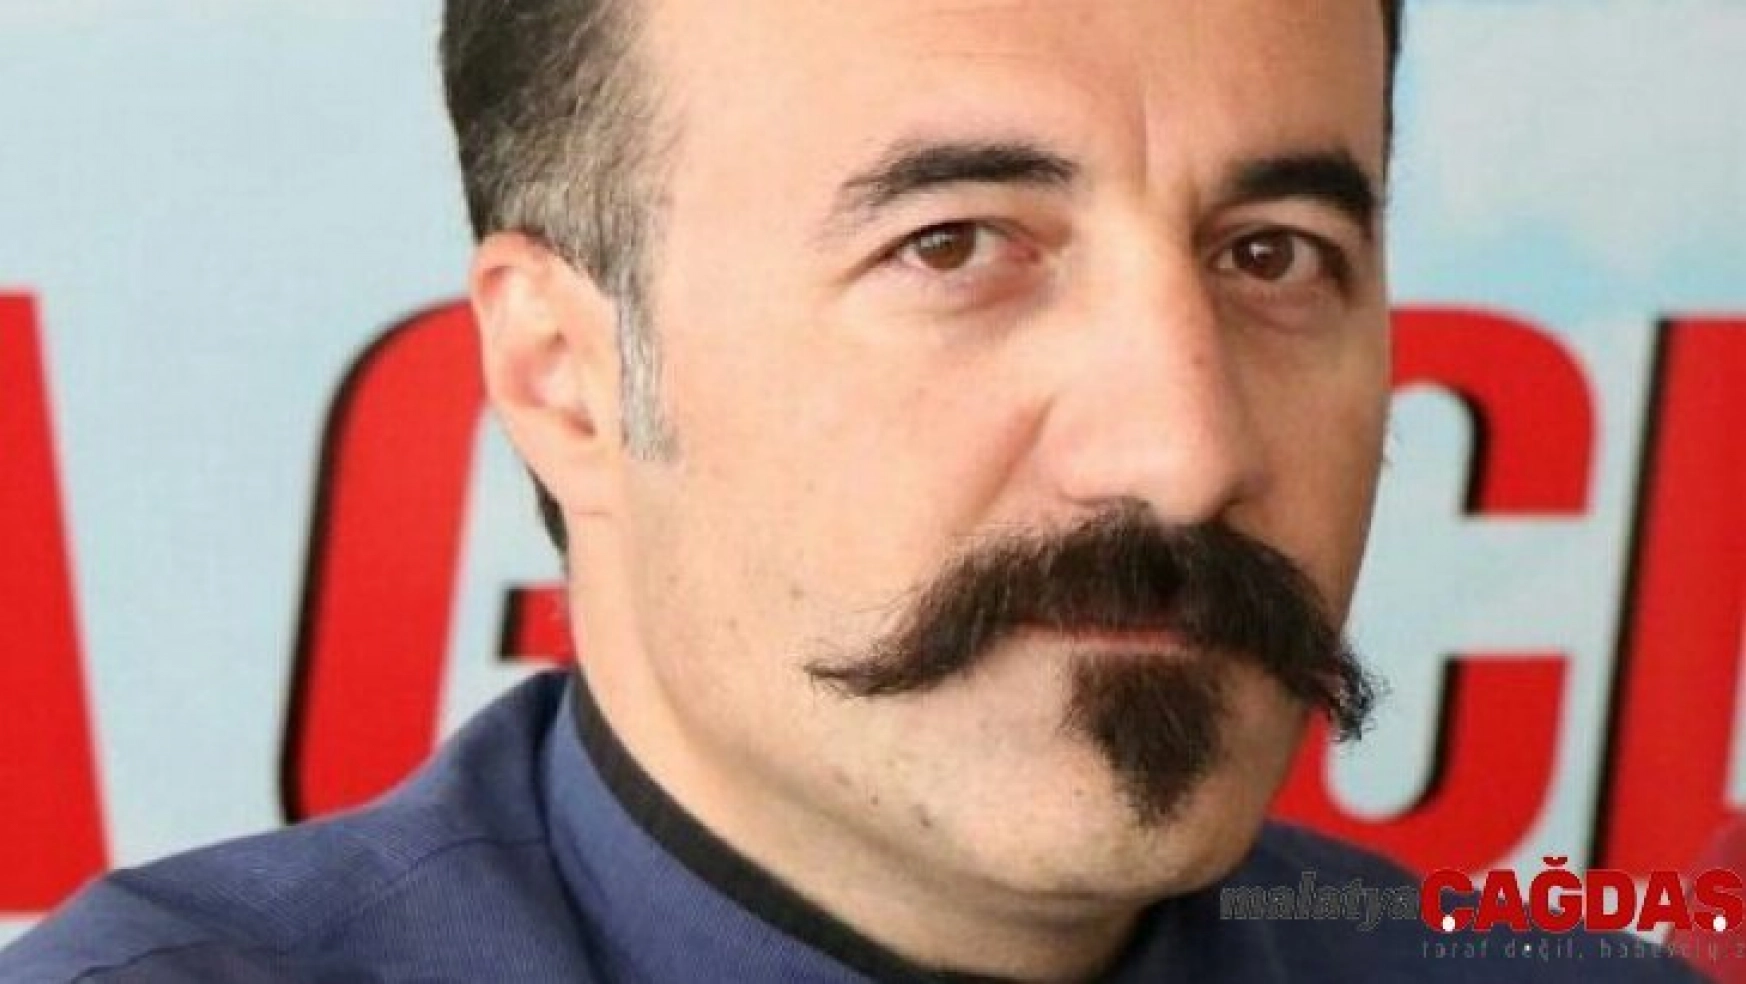 TRT Çerkes davasında verilen yakalama kararı kaldırıldı